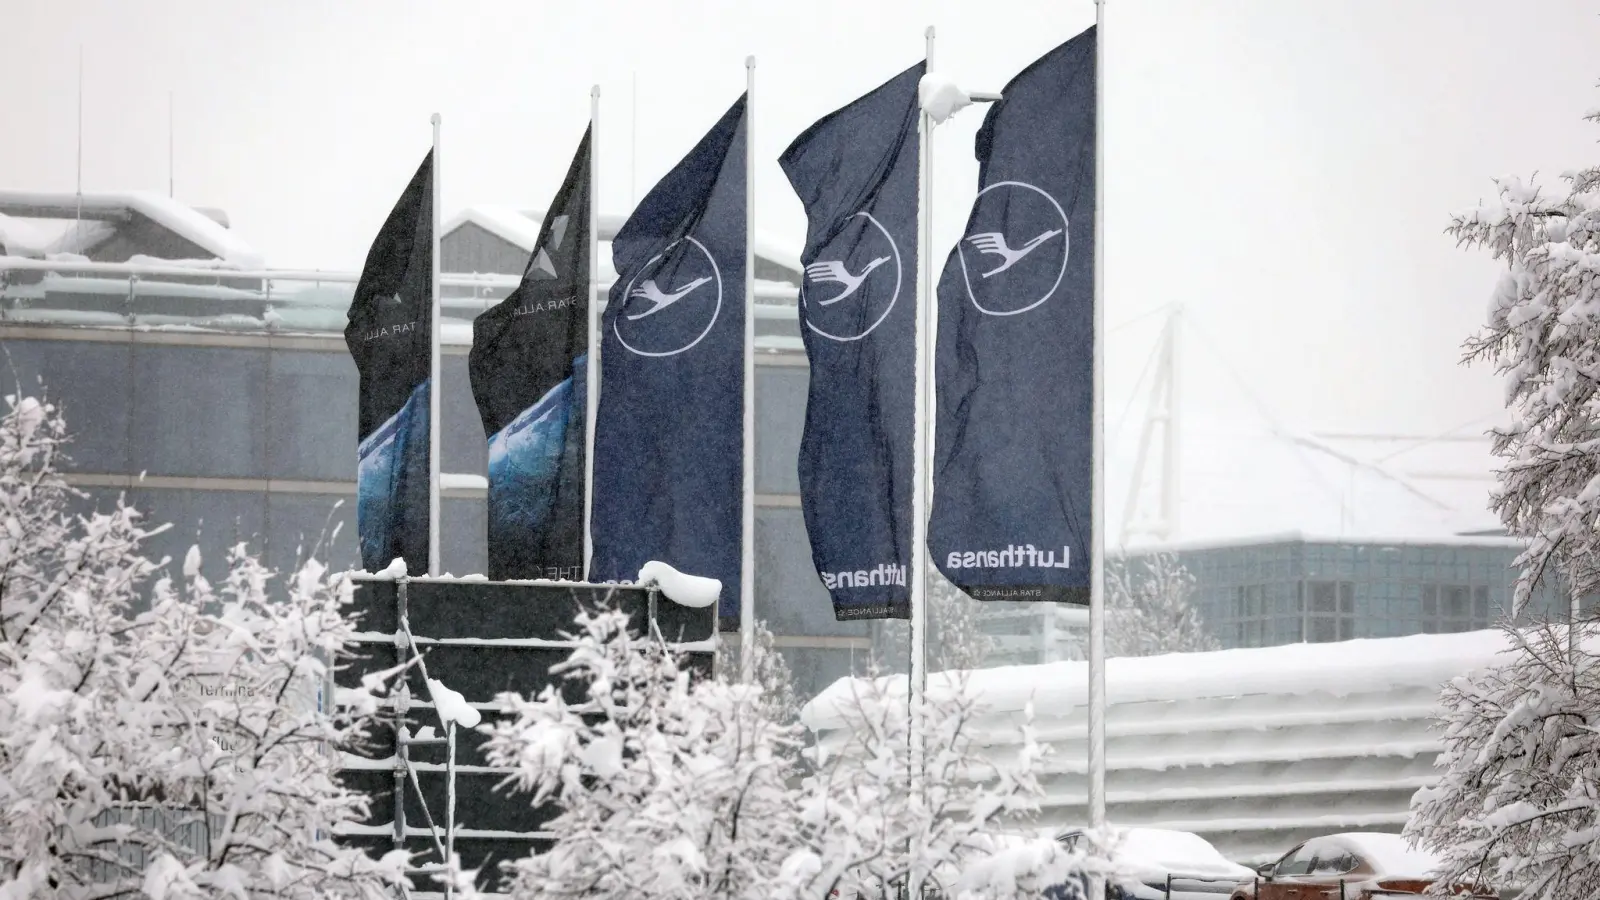 Fahnen der Lufthansa wehen am Flughafen im Schneetreiben. (Foto: Karl-Josef Hildenbrand/dpa)